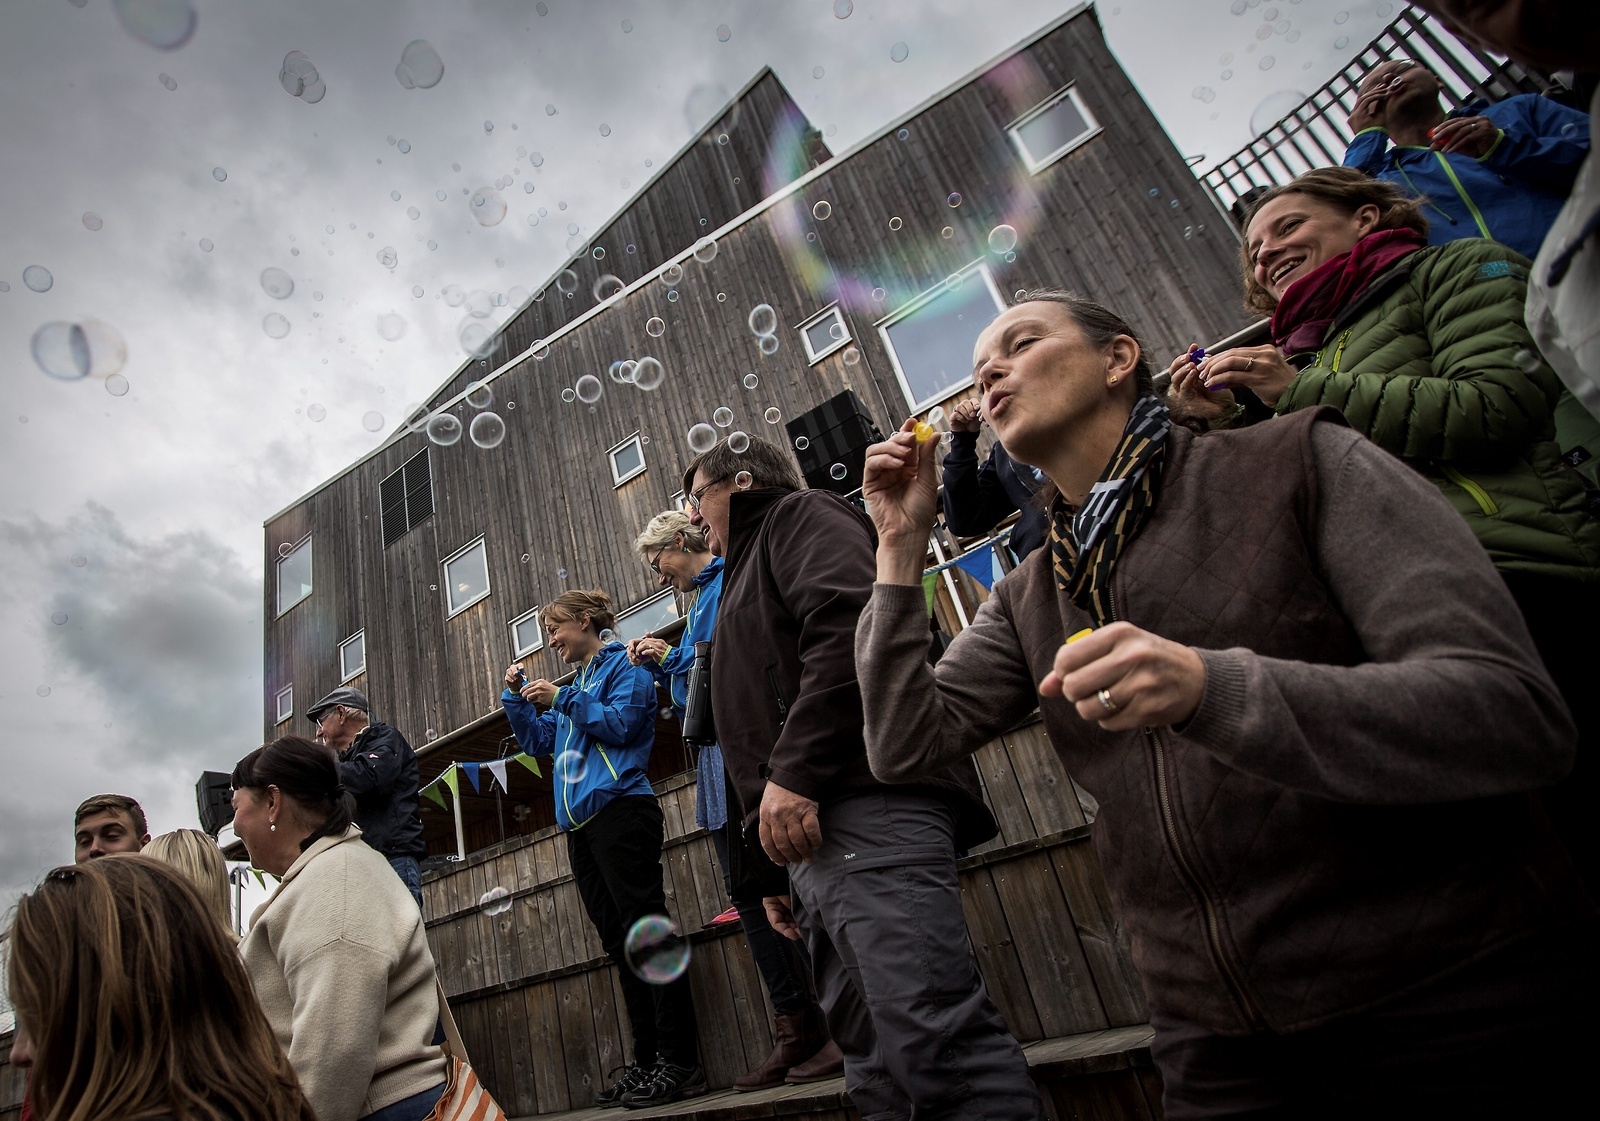 Såpbubblor fick markera att det gått tio år sedan Vattenriket blev biosfärområde. Jubileumet uppmärksammades med tal och aktiviteter på Naturum i Kristianstad på lördagen. Foto: Torbjörn Wester